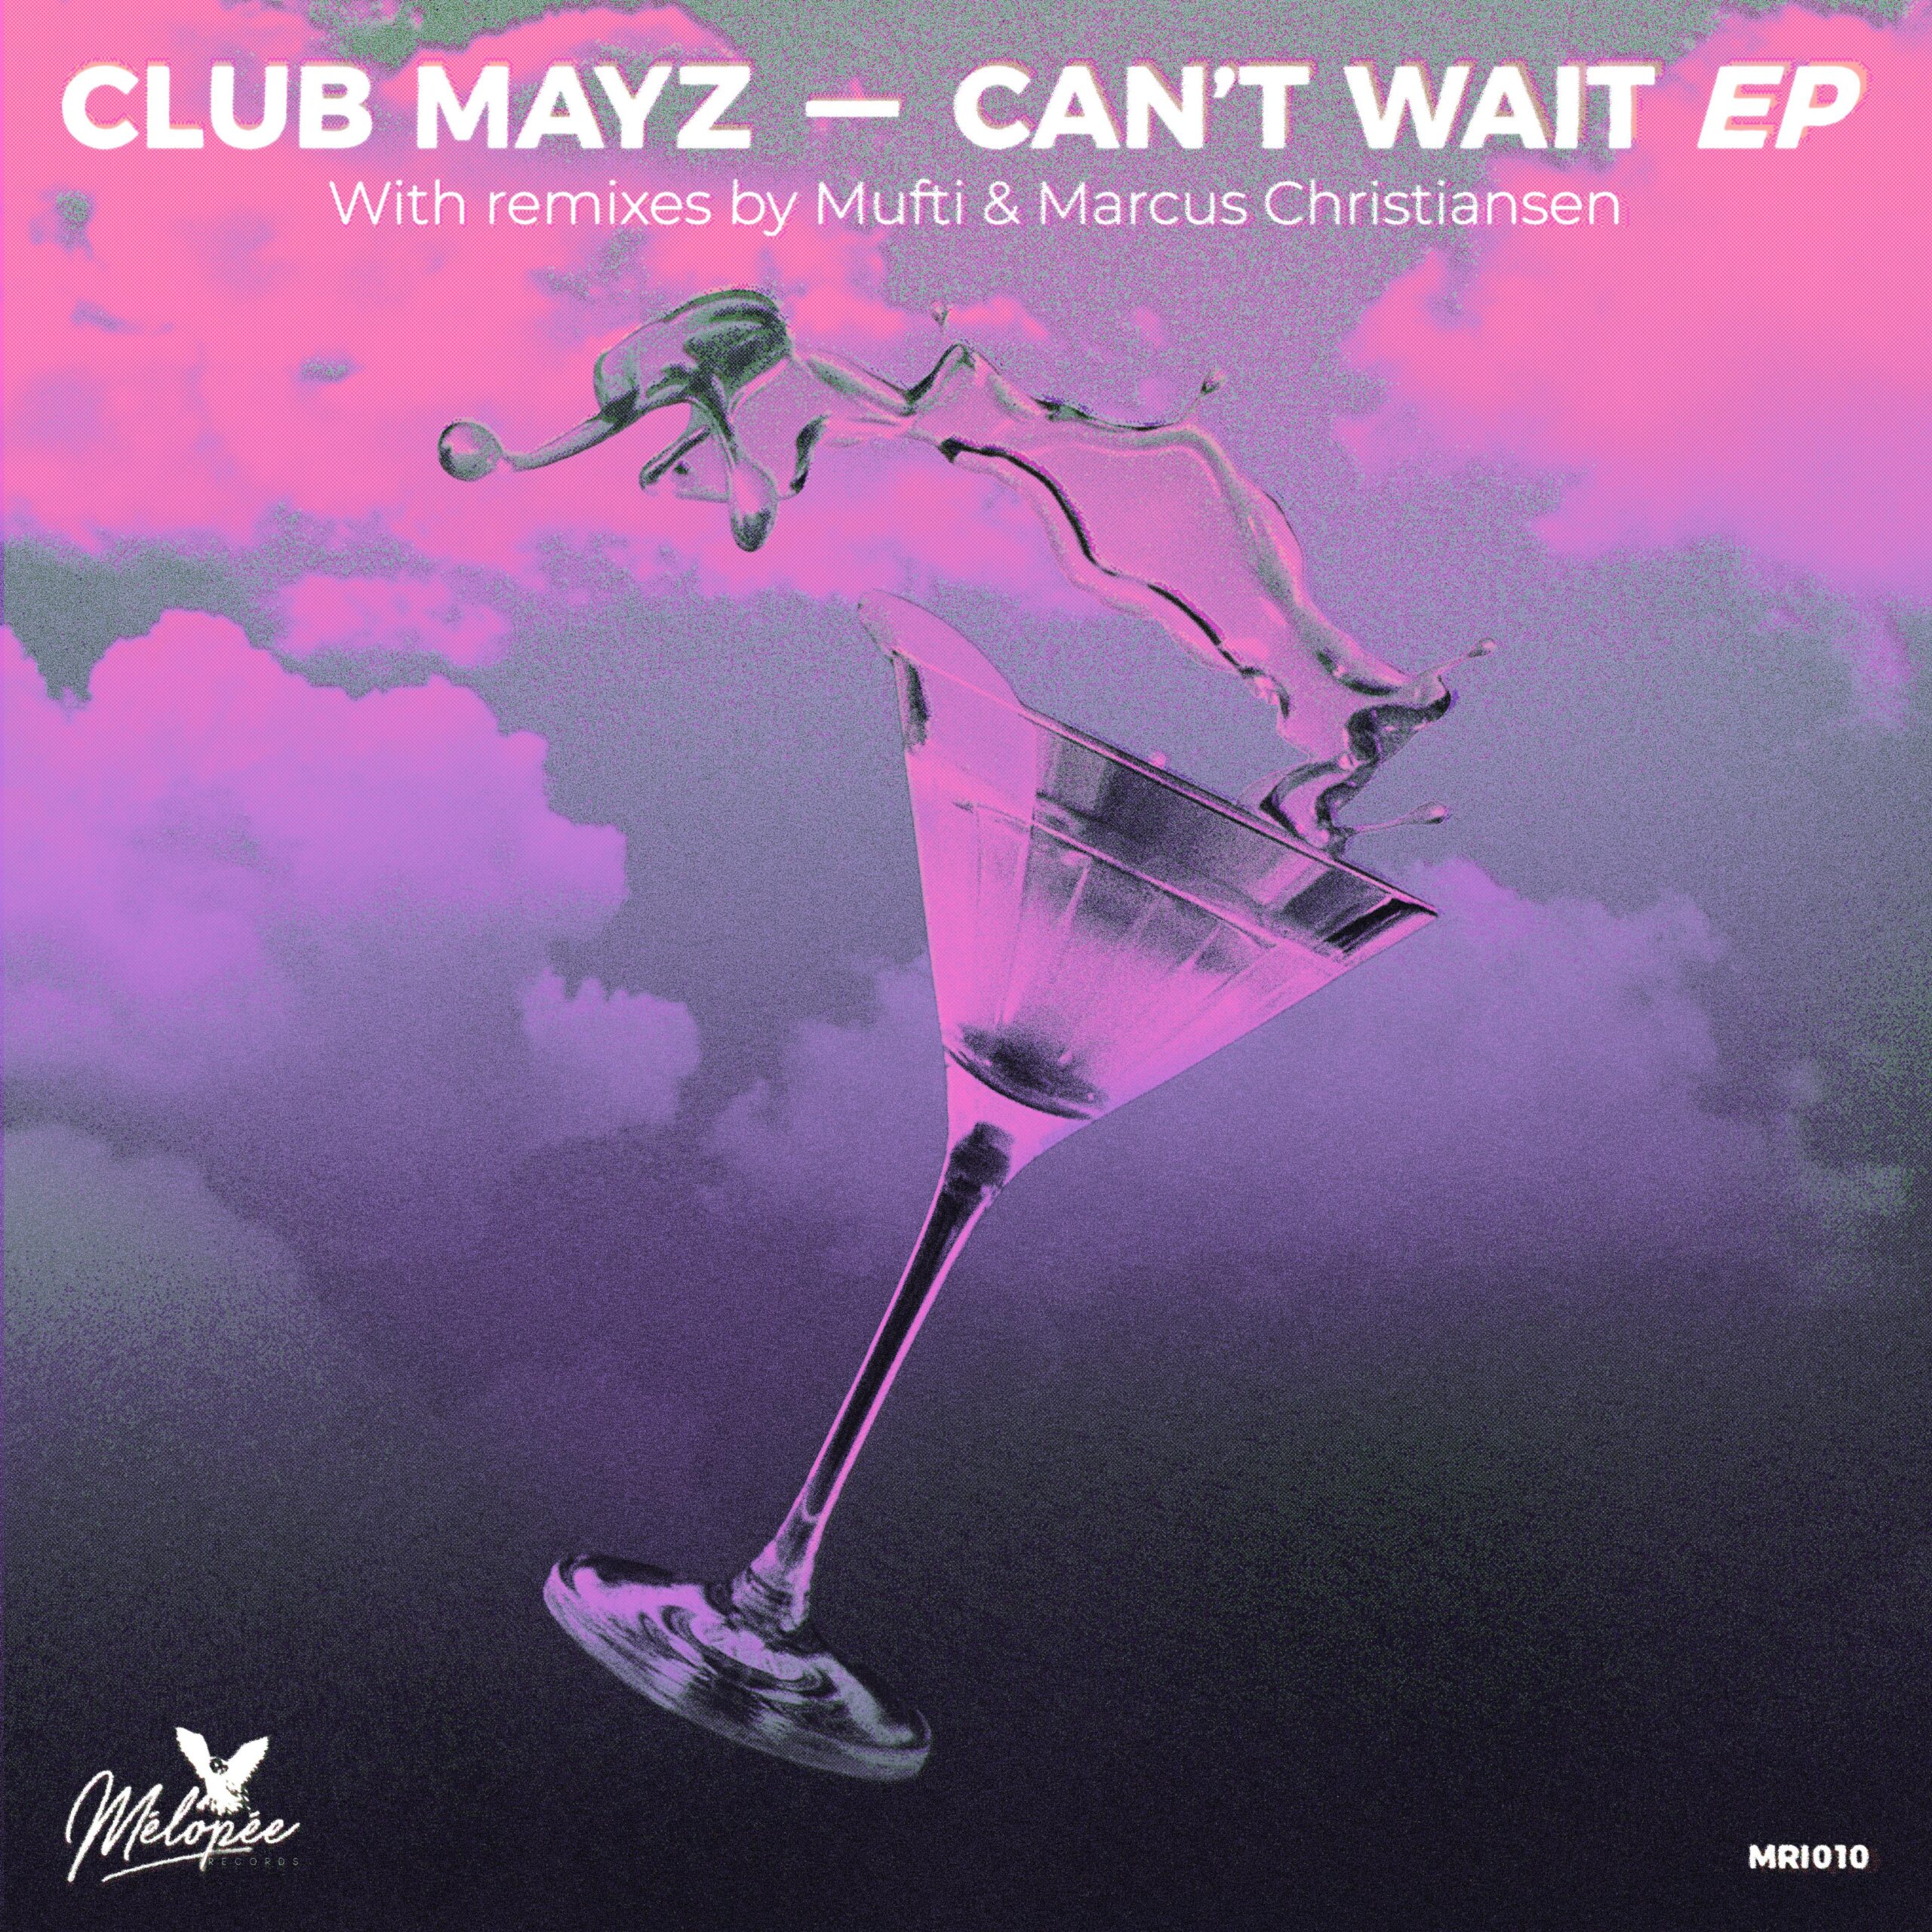 PREMIERE: Club Mayz - Can't Wait (Marcus Christiansen Remix) [Melopée]